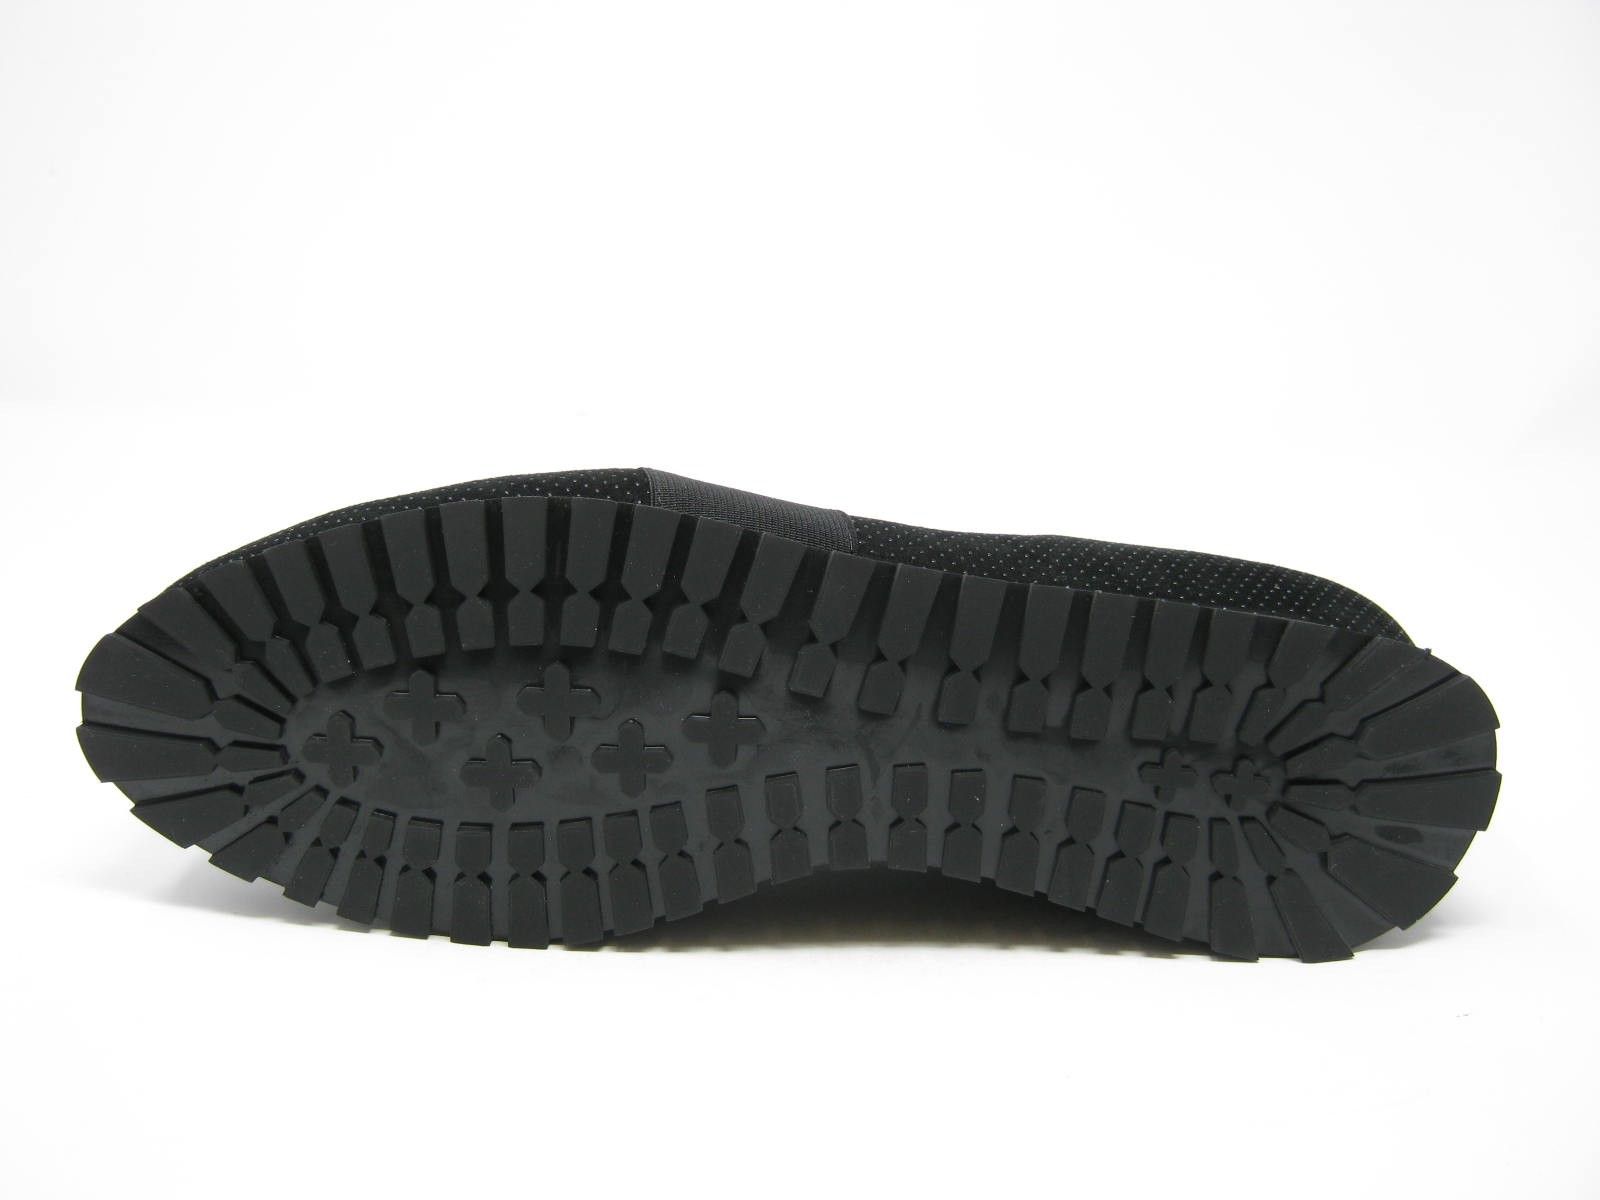 Schuh von Hassia, 6½